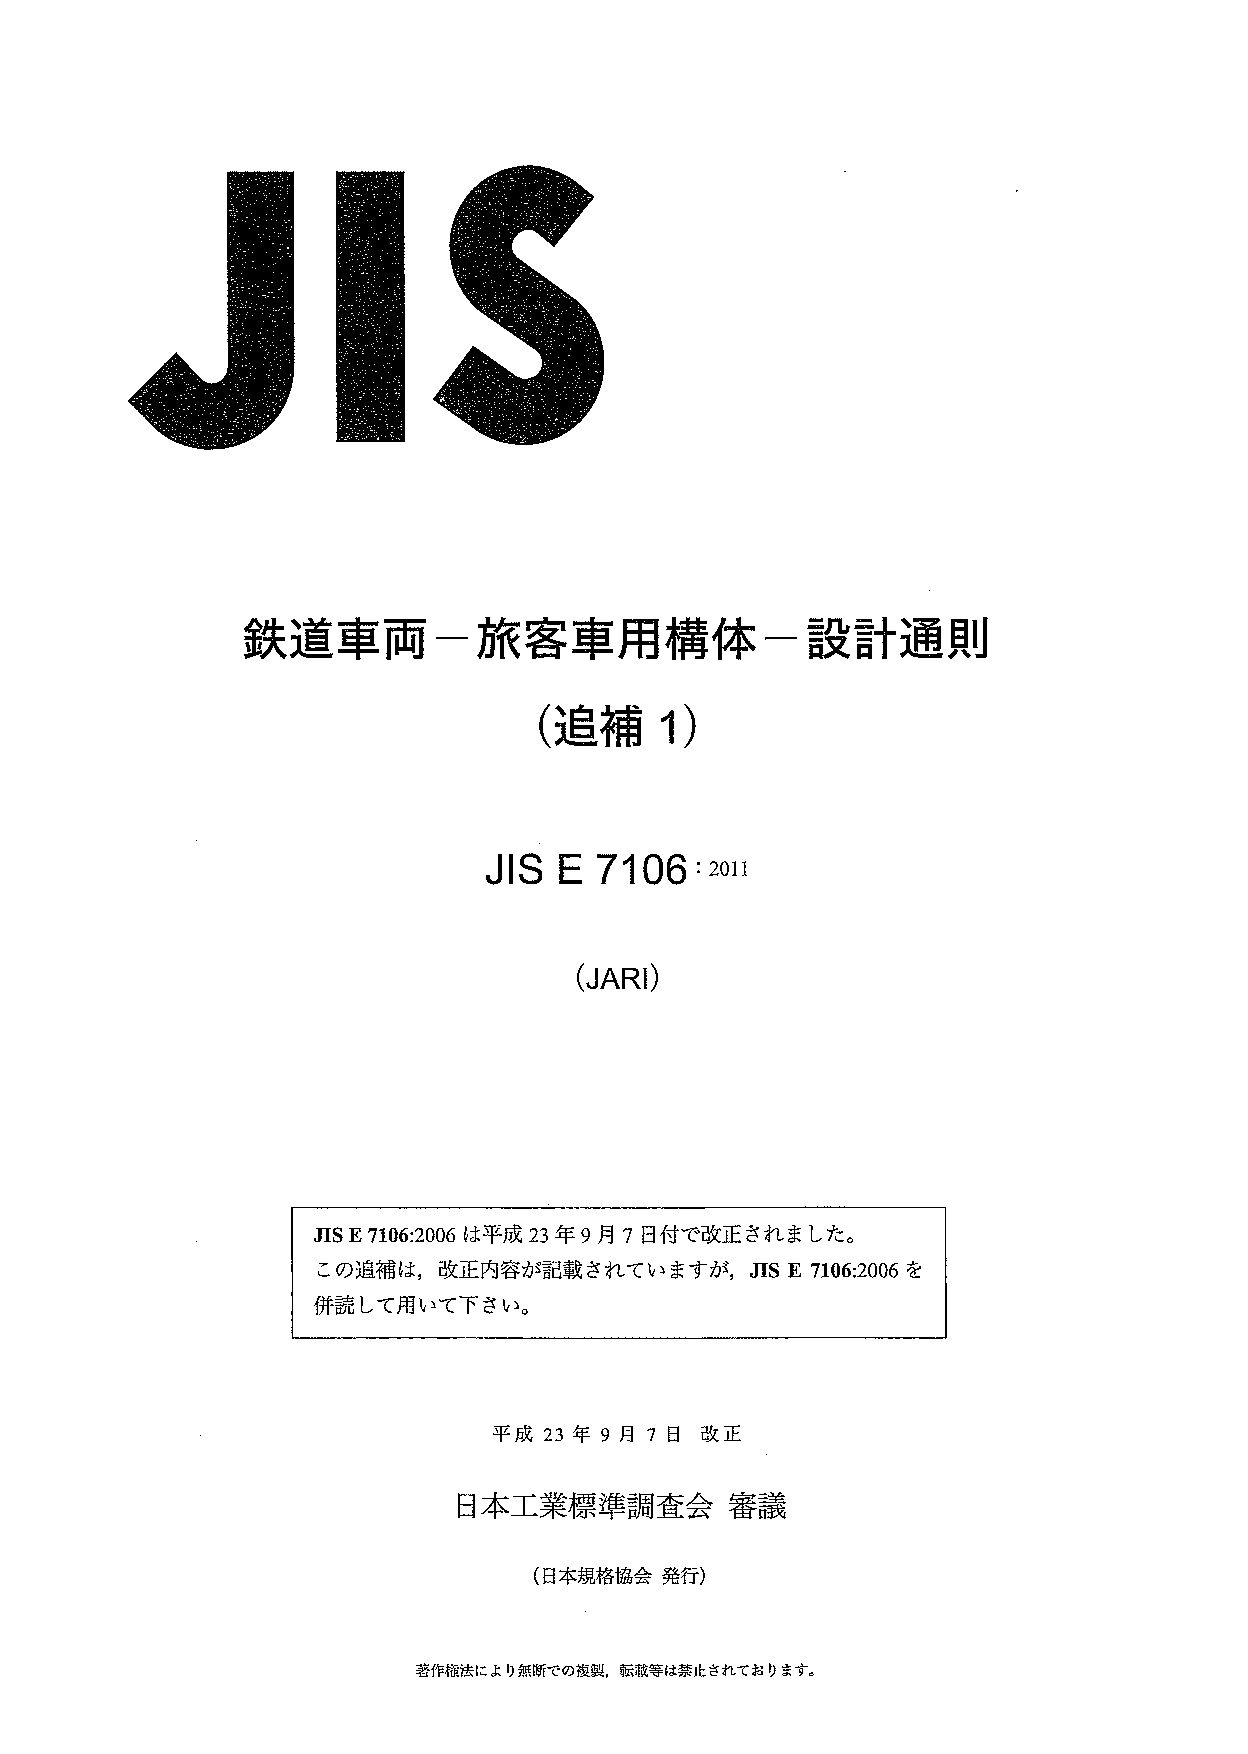 JIS E7106 AMD 1-2011